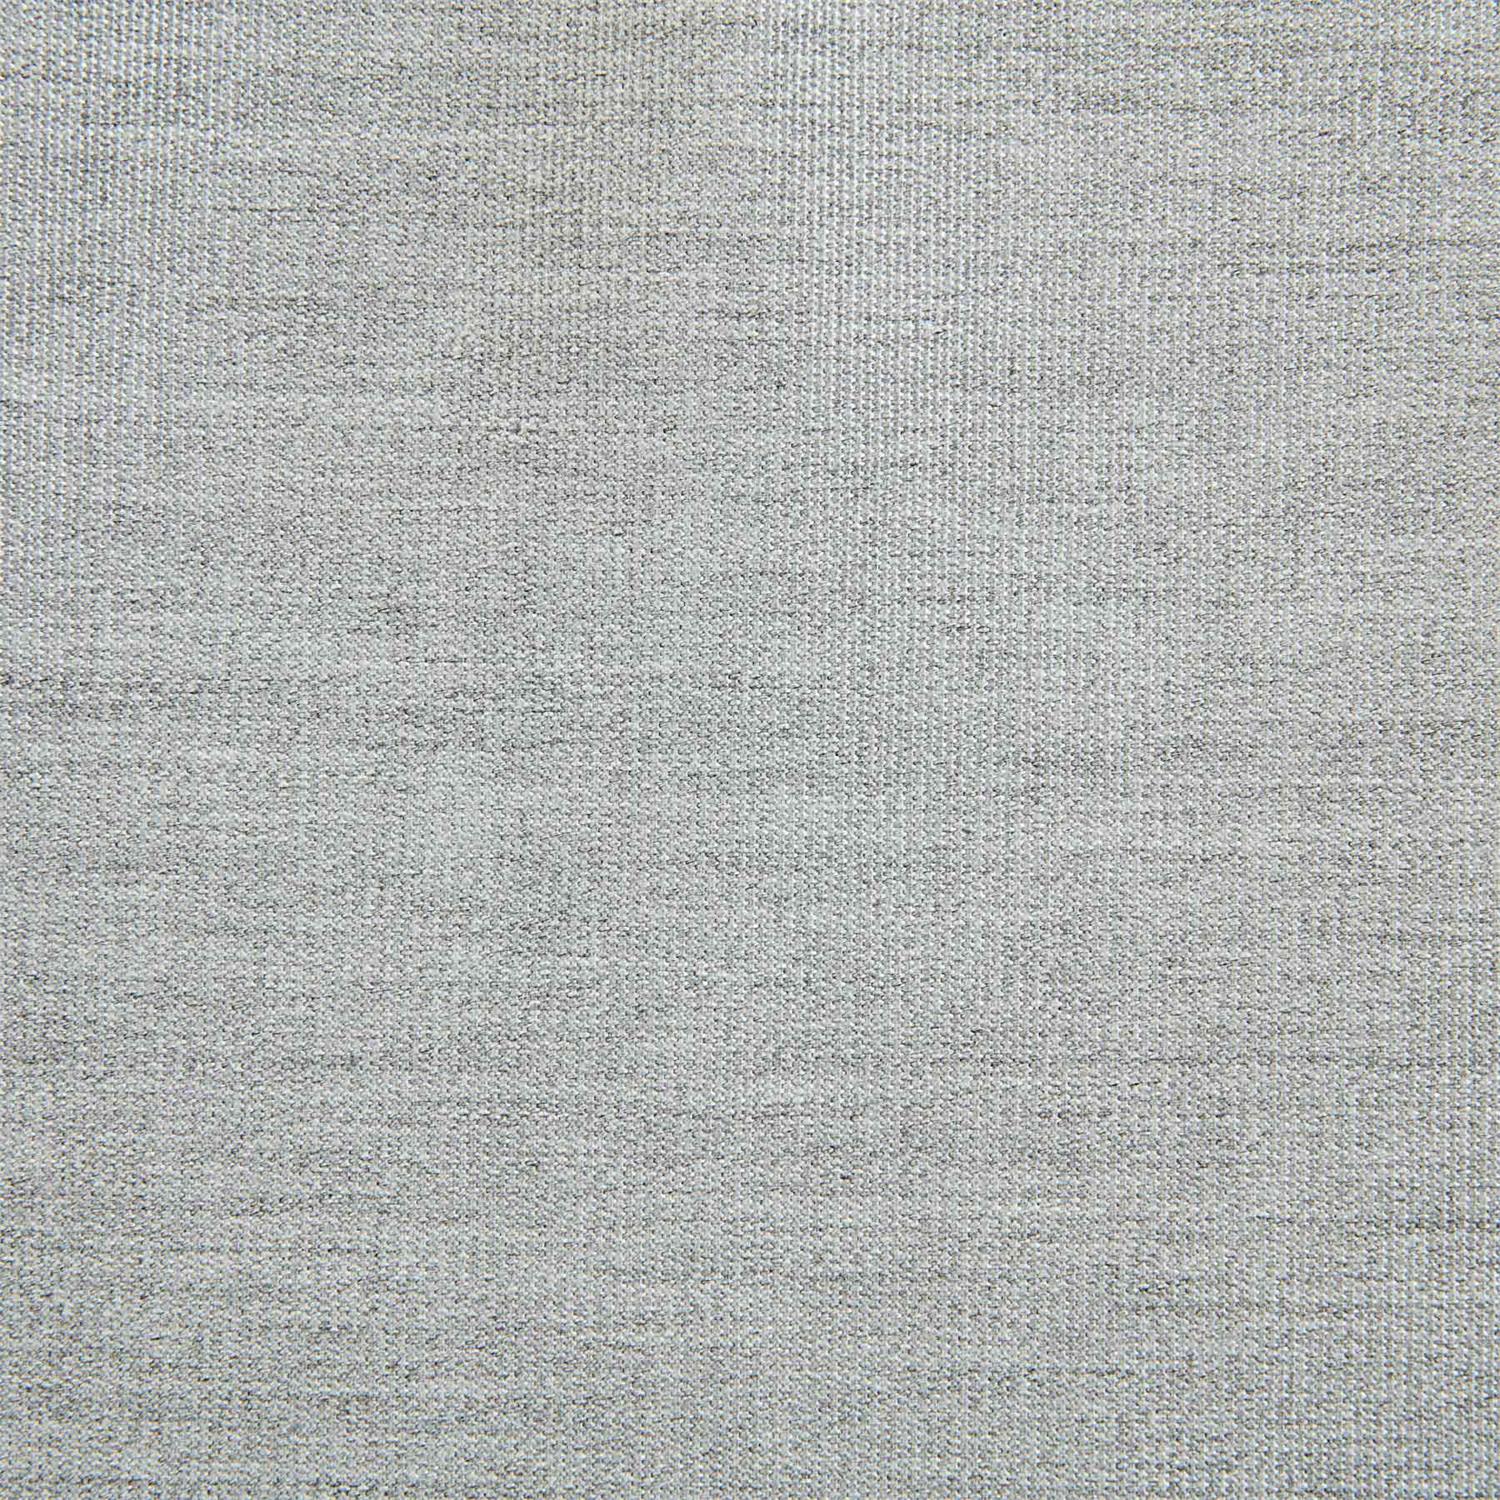 6031-010 Fabric